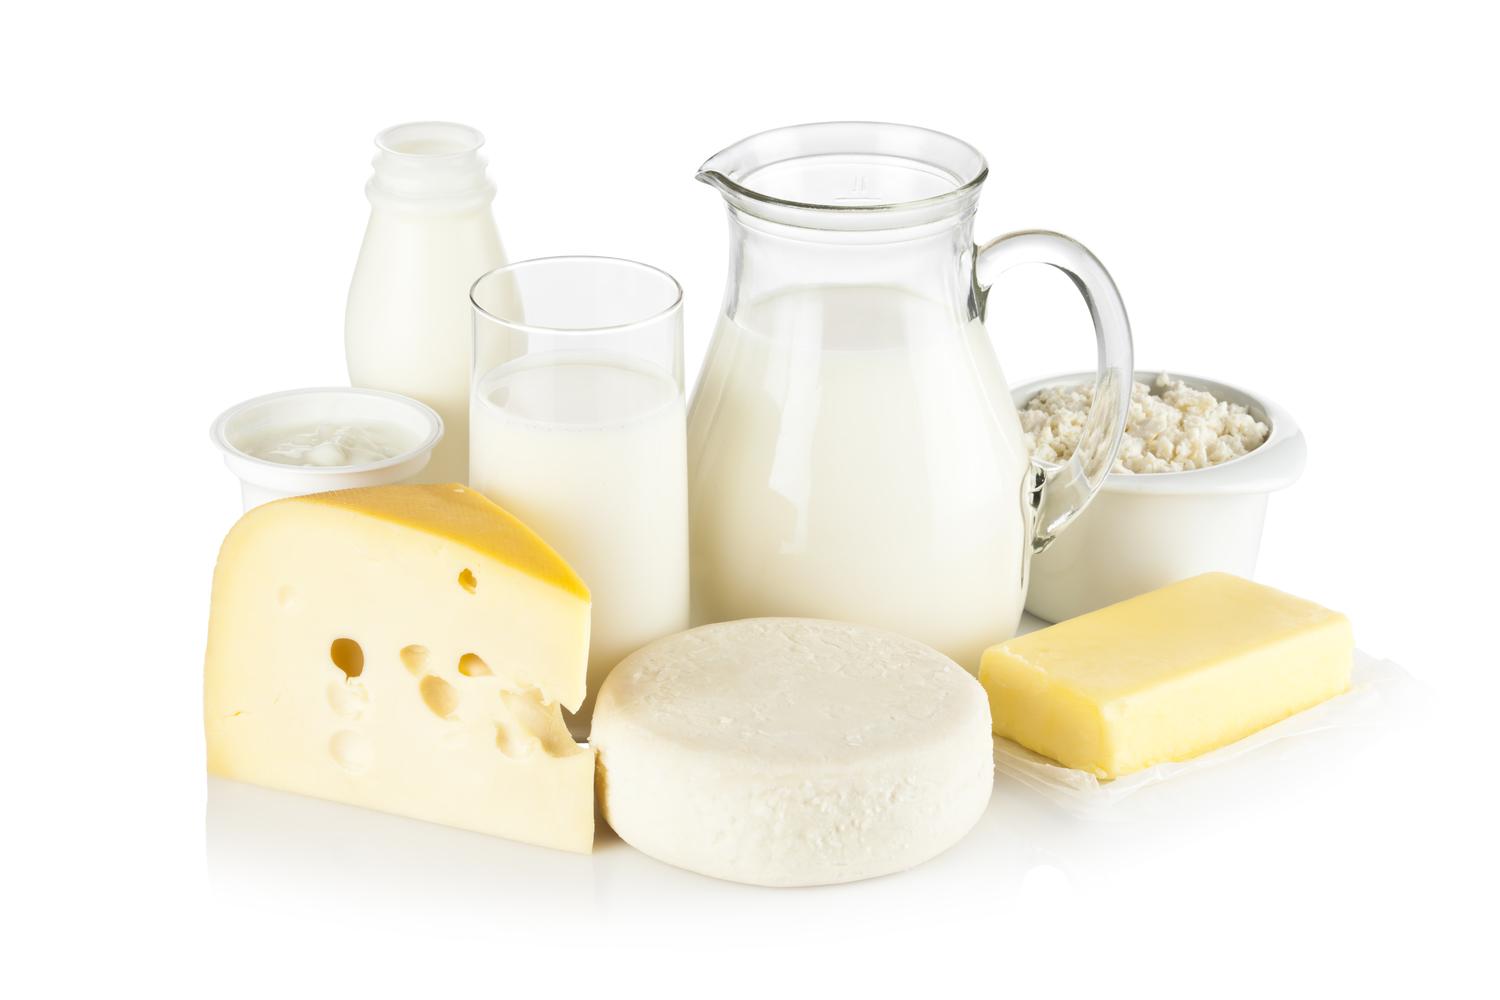 14 українських підприємств мають право на експорт молочної продукції в ЄС